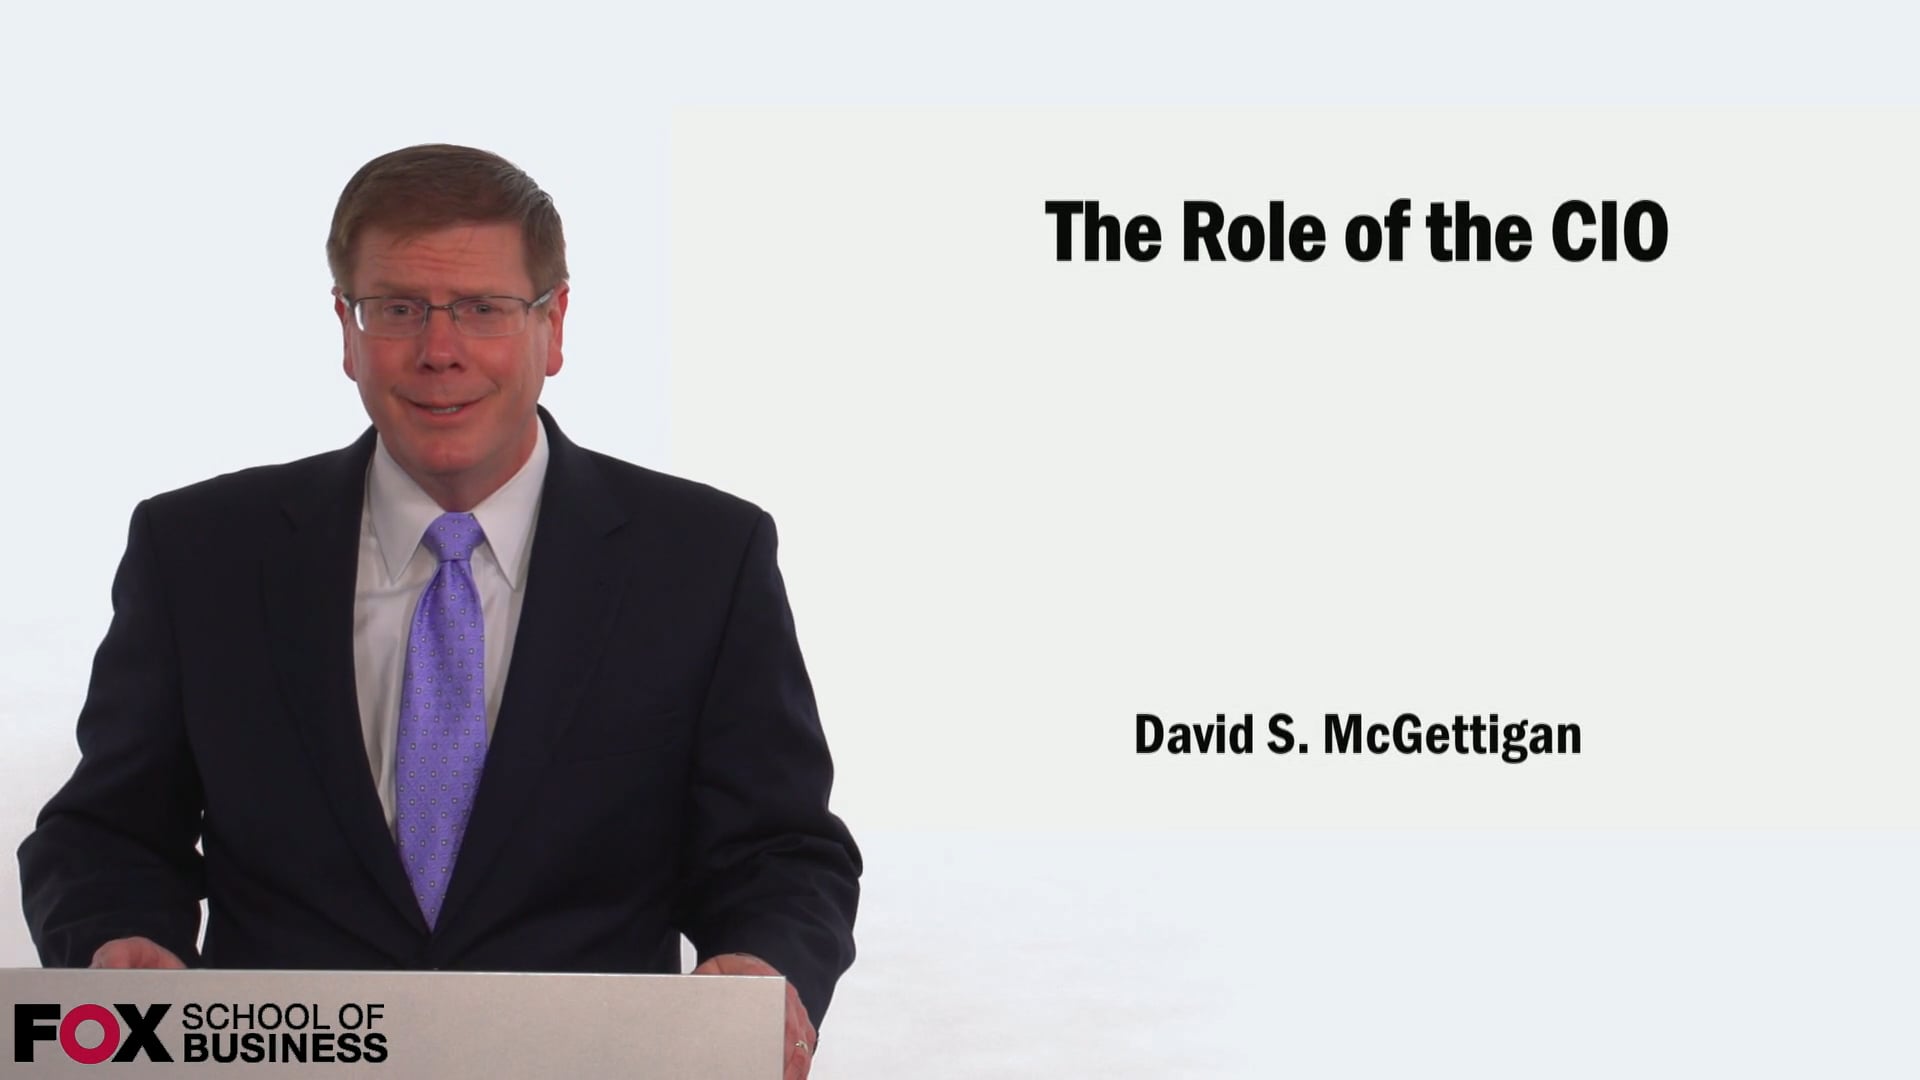 The Role of the CIO